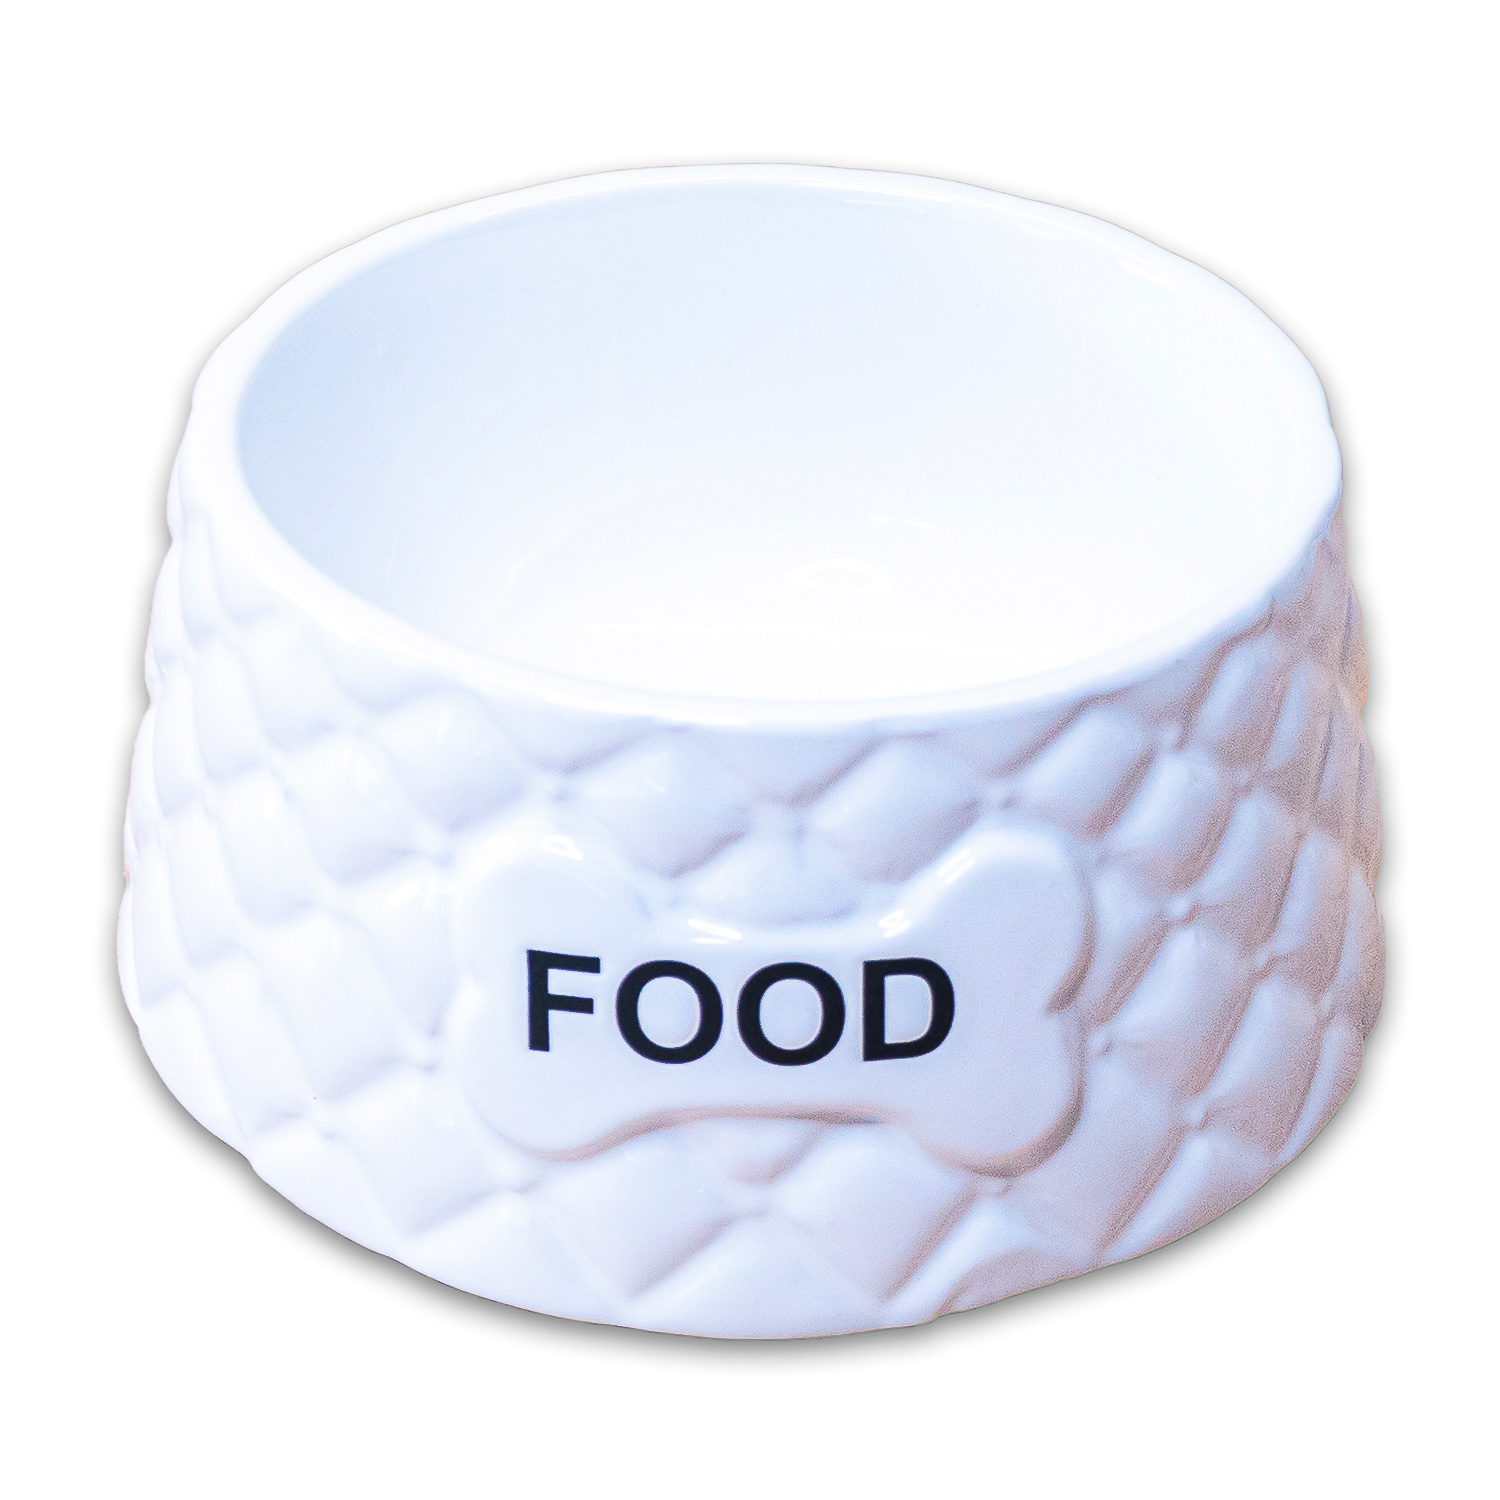 КерамикАрт КерамикАрт миска Food  керамическая, белая (680 мл)